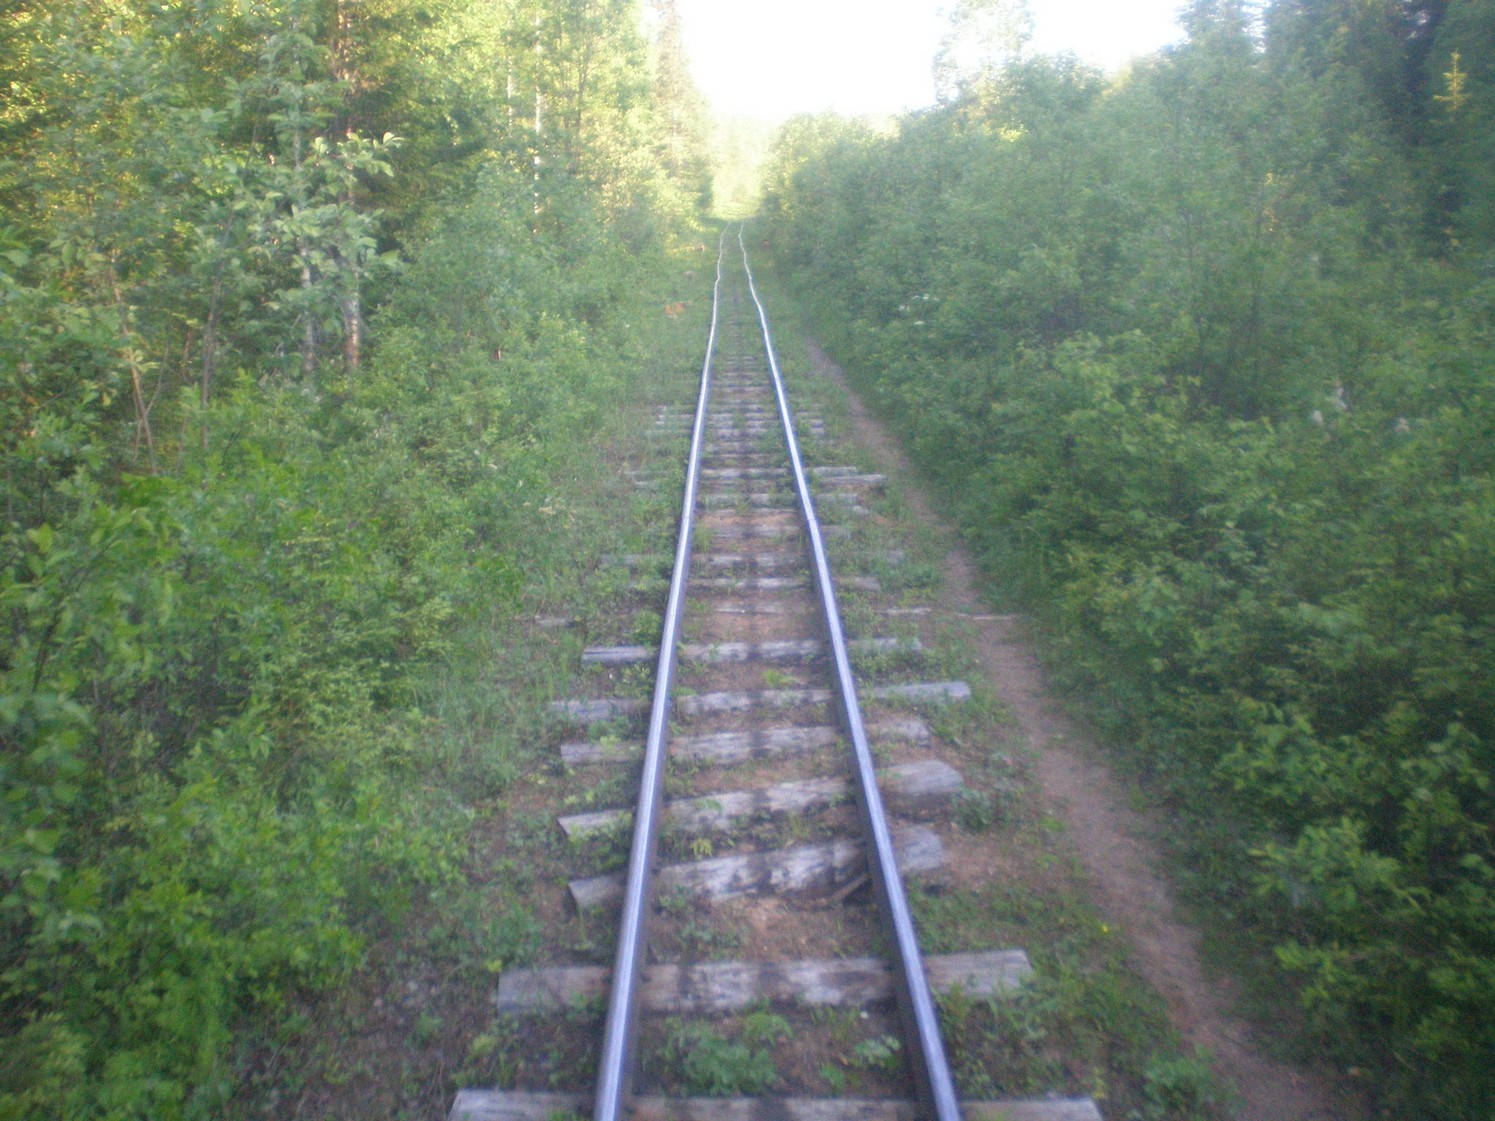 Ивакшанская узкоколейная железная дорога — фотографии, сделанные в 2009 году (часть 3)